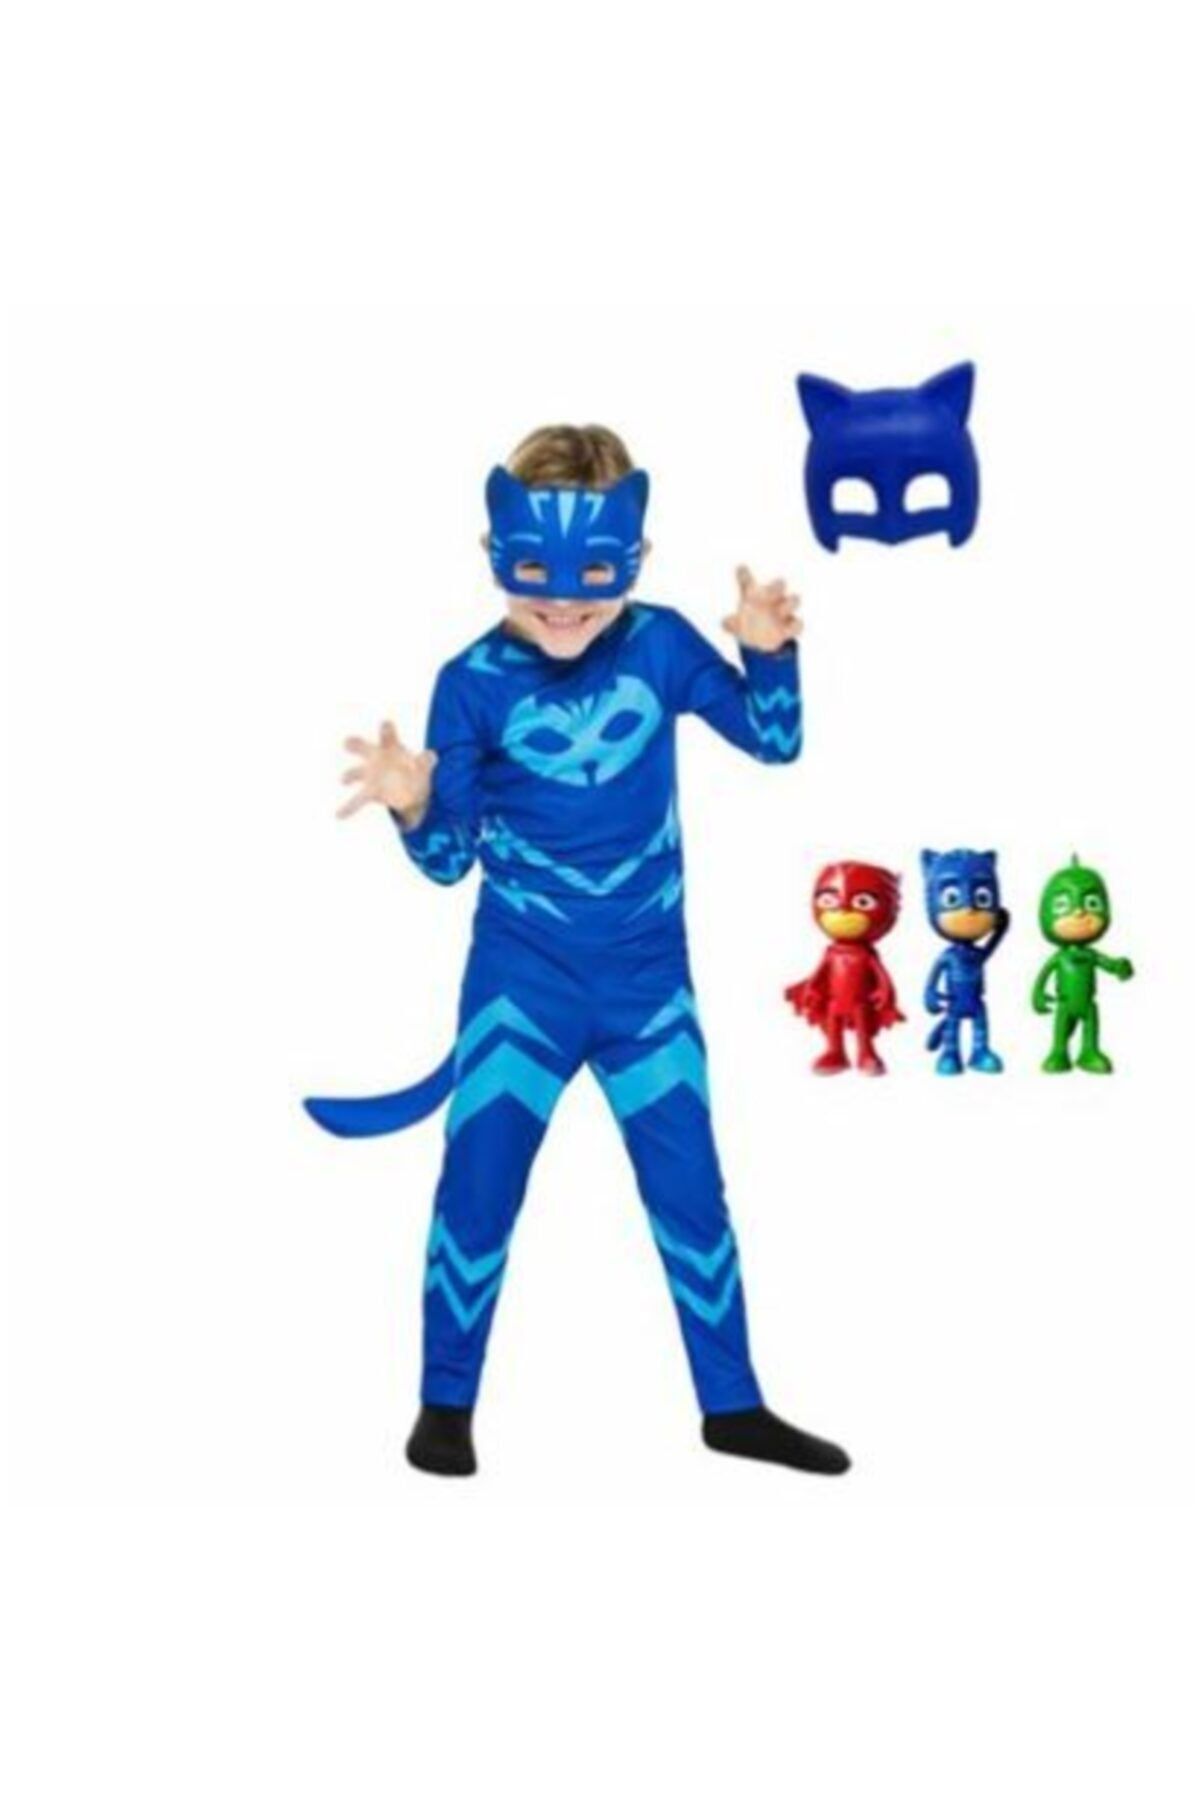 Tek Favorim Pija Maskeliler Catboy Kedi Çocuk Kostüm 2 Maskeli Pj Masks Kostüm Seti Ve 3'lü Mini Figür Oyuncak